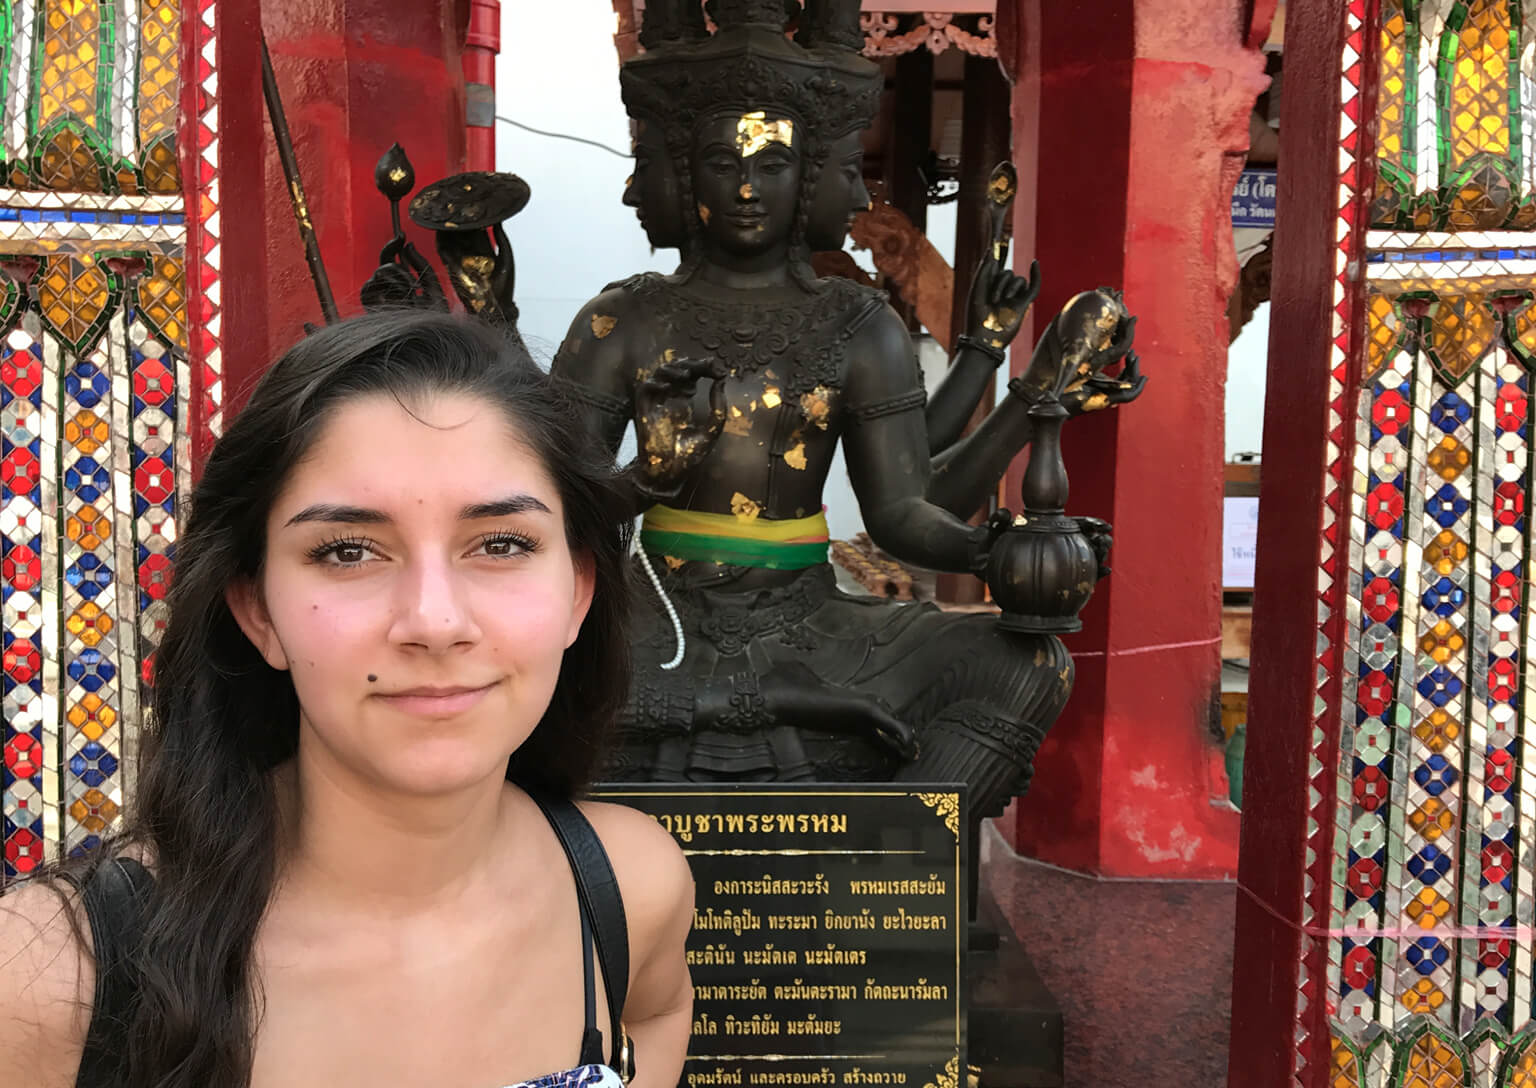 Bilde av artikkelskribent Noor som står foran en hinduistisk statue. Hun kikker rett inn i kameraet